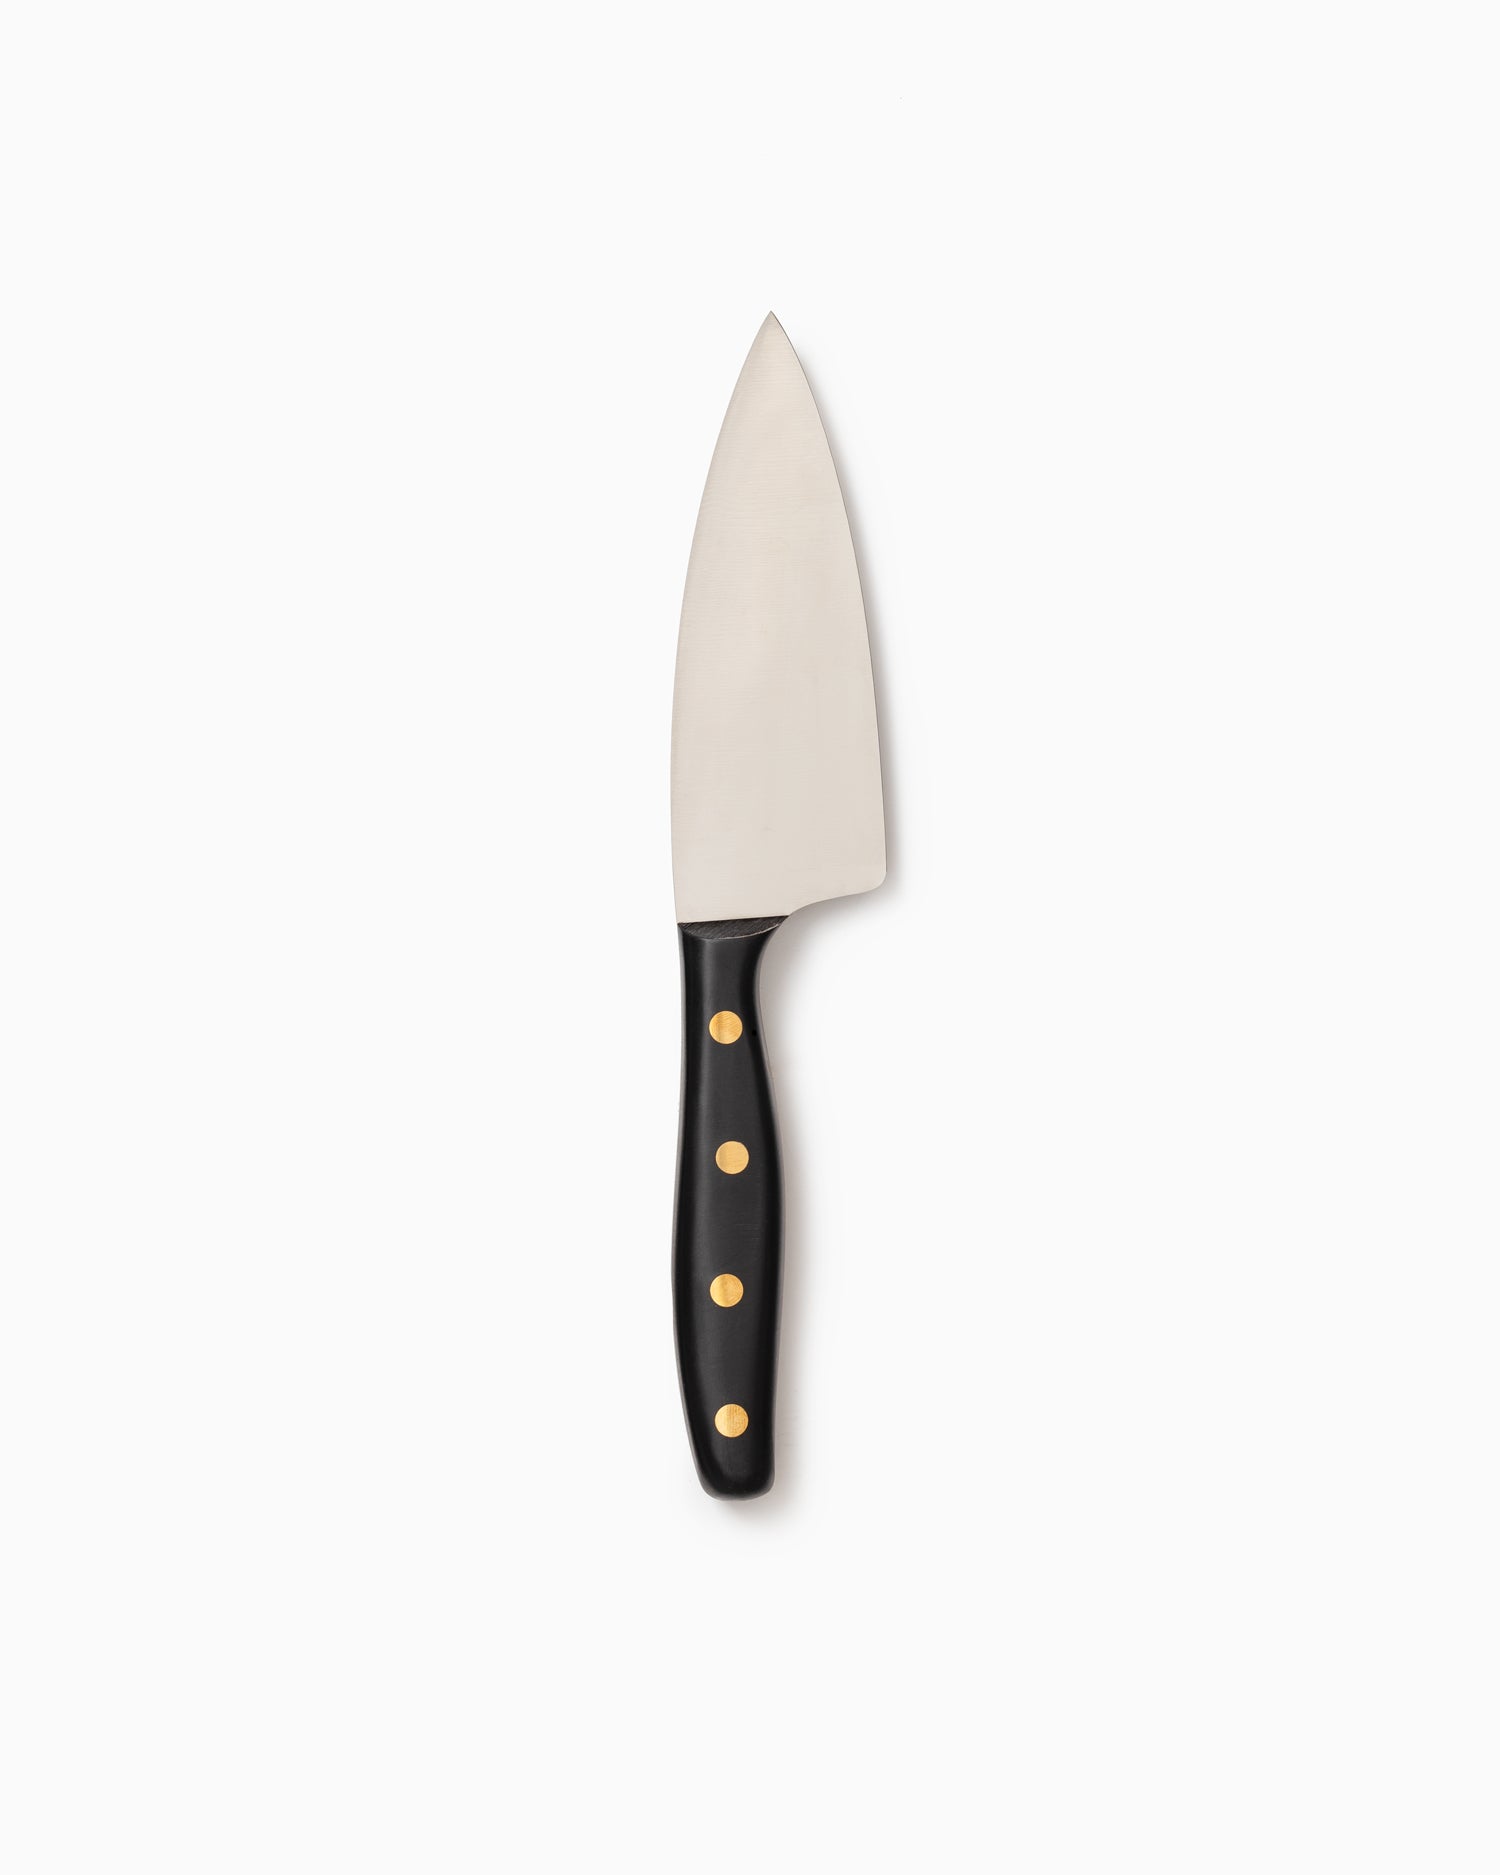 Robert Herder K4 Kitchen Knife - Stainless